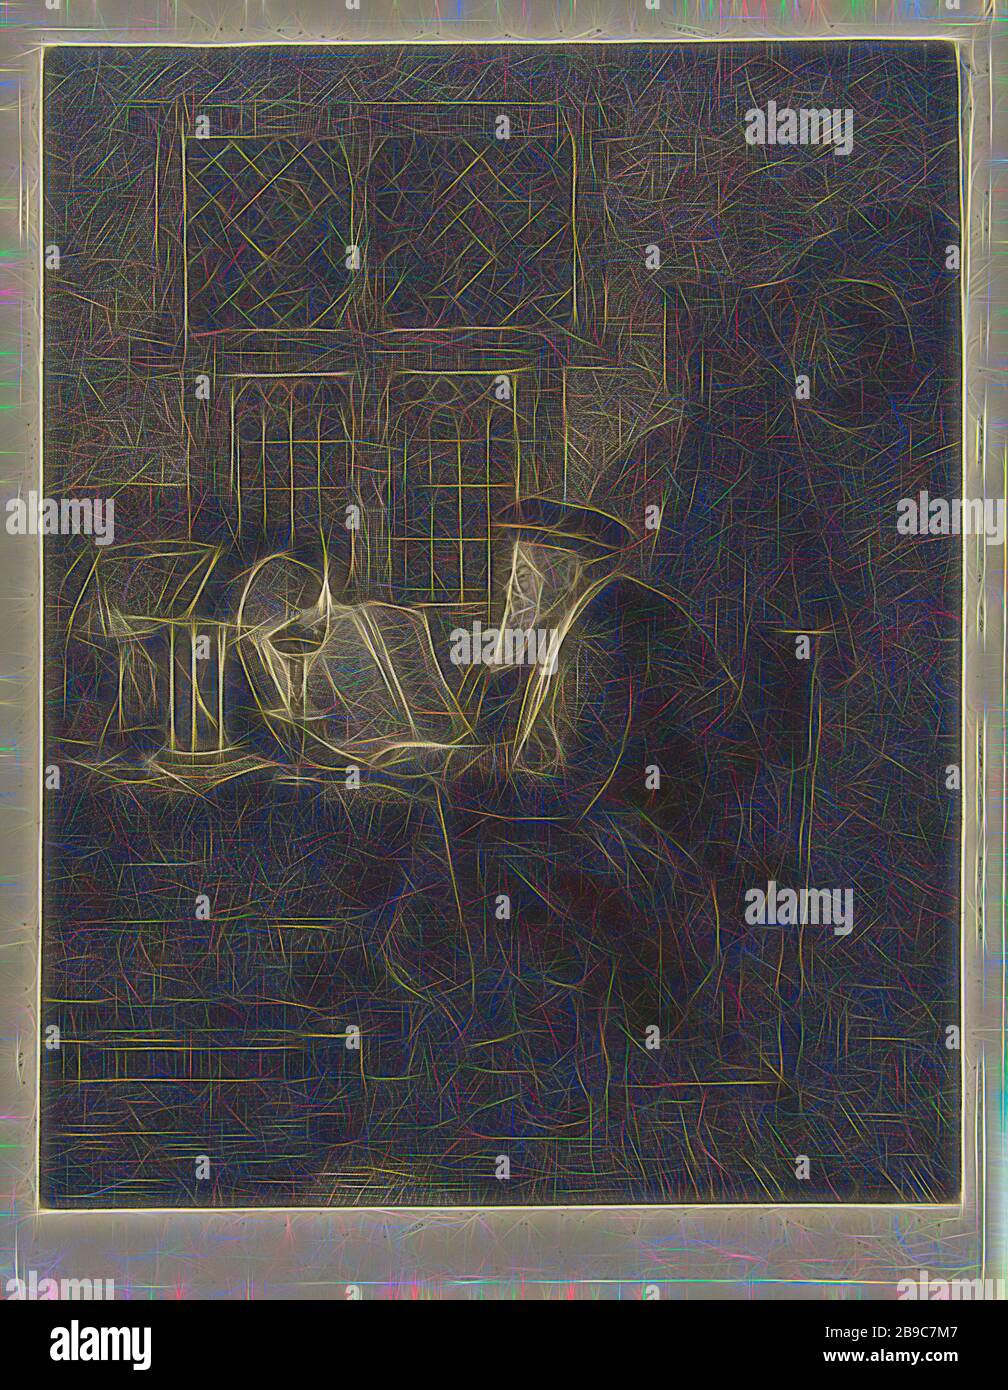 Philosoph in seiner Studie untersucht ein Mann in einem dunklen Raum bei dem Licht, das von einer Öllampe kommt, ein Buch, das auf dem Tisch vor ihm liegt. Hinter dem Buch befindet sich eine Lupe und eine offene Schachtel mit Papier und einer Sanduhr auf dem Tisch, Gelehrter in seiner Studie, Lupe, Sanduhr, Johannes Pieter de Frey, 1796, Papier, Radierung, h 220 mm × w 167 mm, neu von Gibon vorgestellt, Design mit warmem, fröhlichem Glanz von Helligkeit und Lichtstrahlen. Klassische Kunst mit moderner Note neu erfunden. Fotografie inspiriert von Futurismus, die dynamische Energie moderner Technologie, Bewegung, Geschwindigkeit und r umfasst Stockfoto